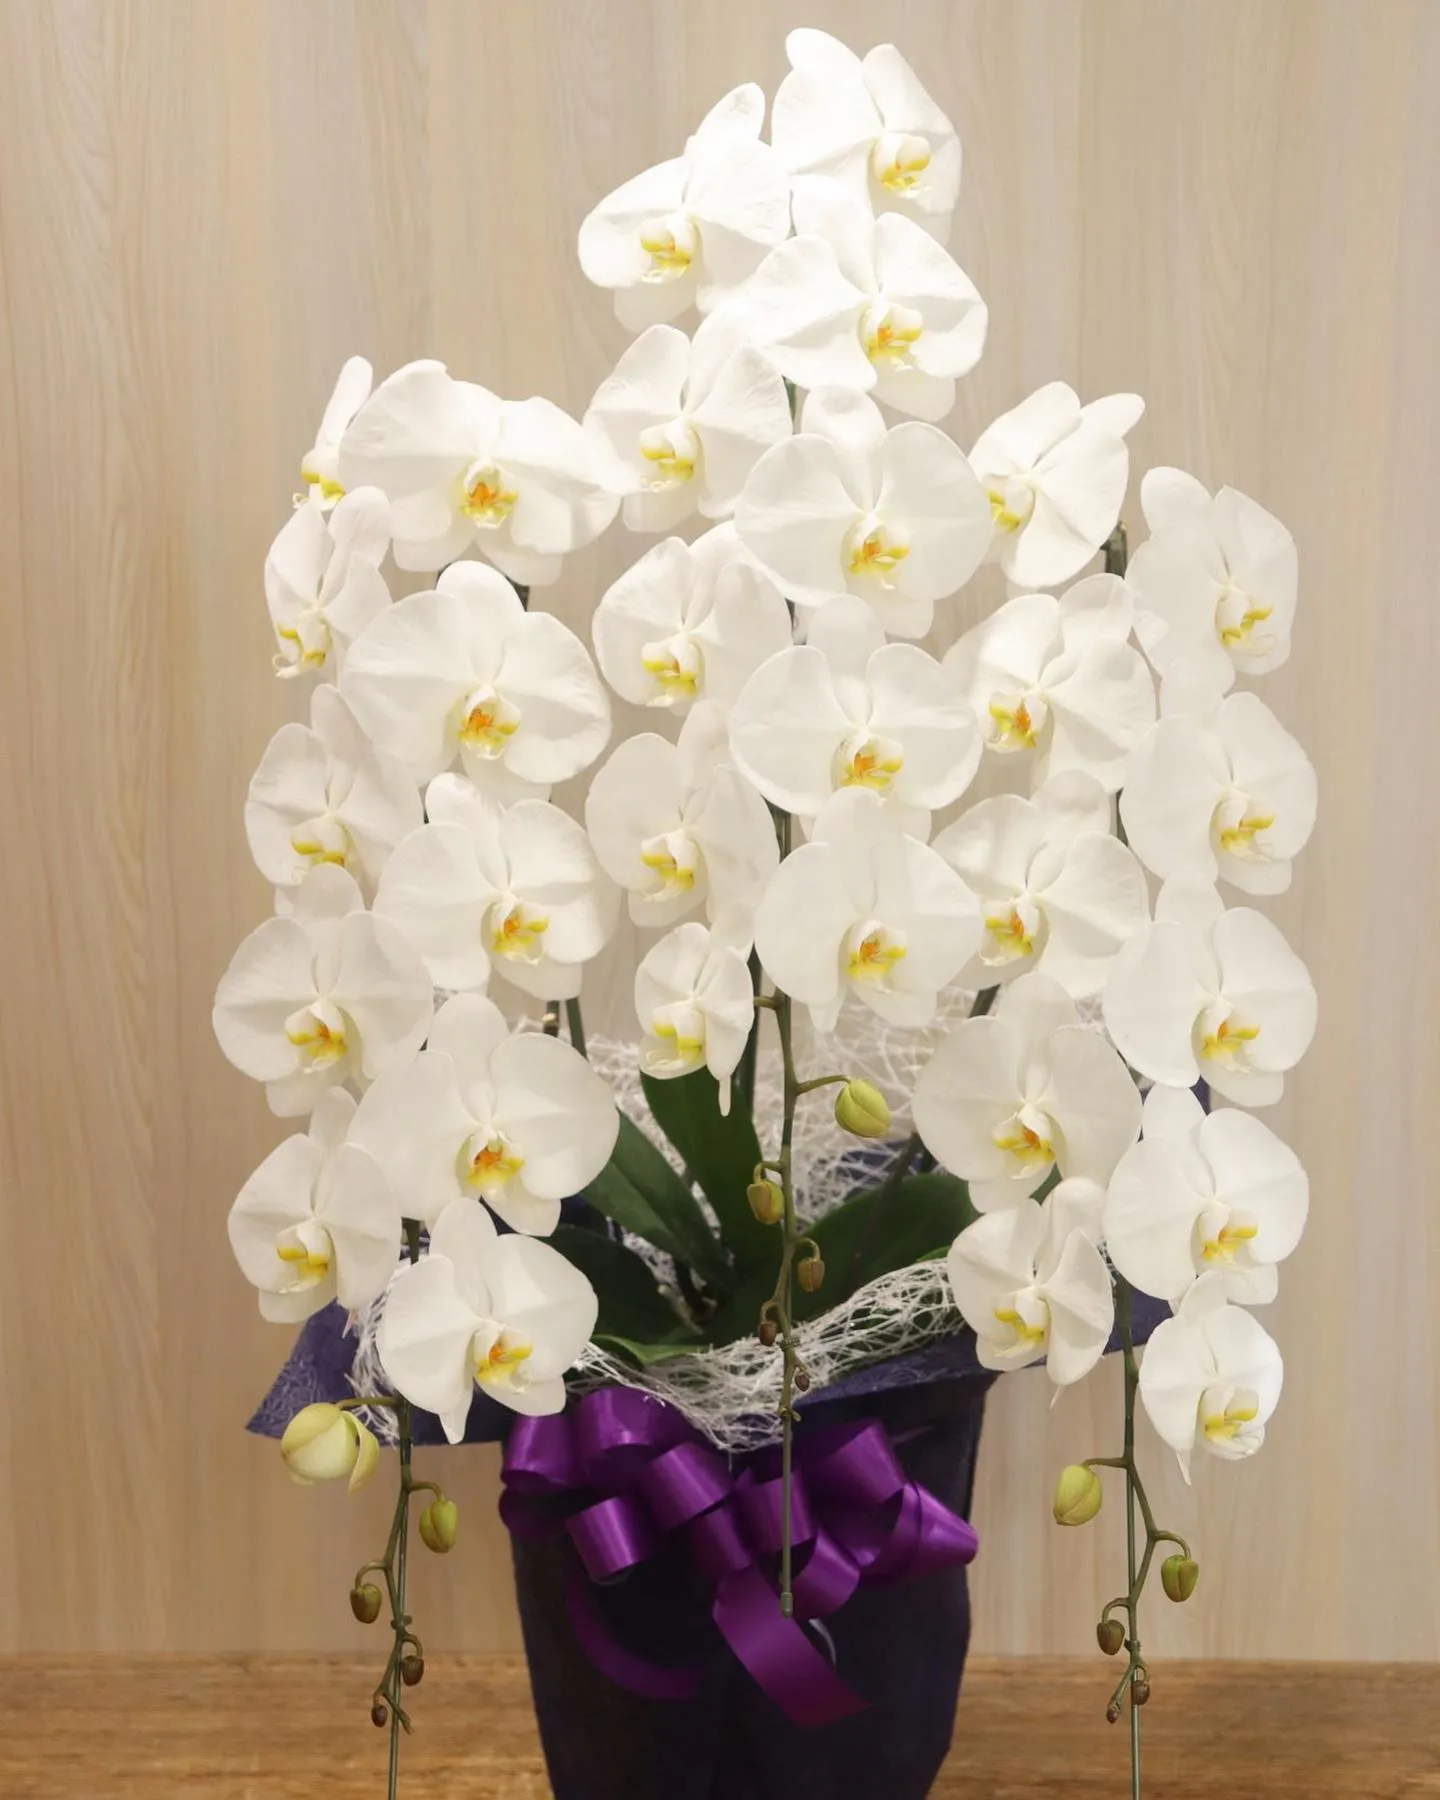 花言葉に「幸福が飛んでくる」がある胡蝶蘭はお祝いのお花にぴっ...